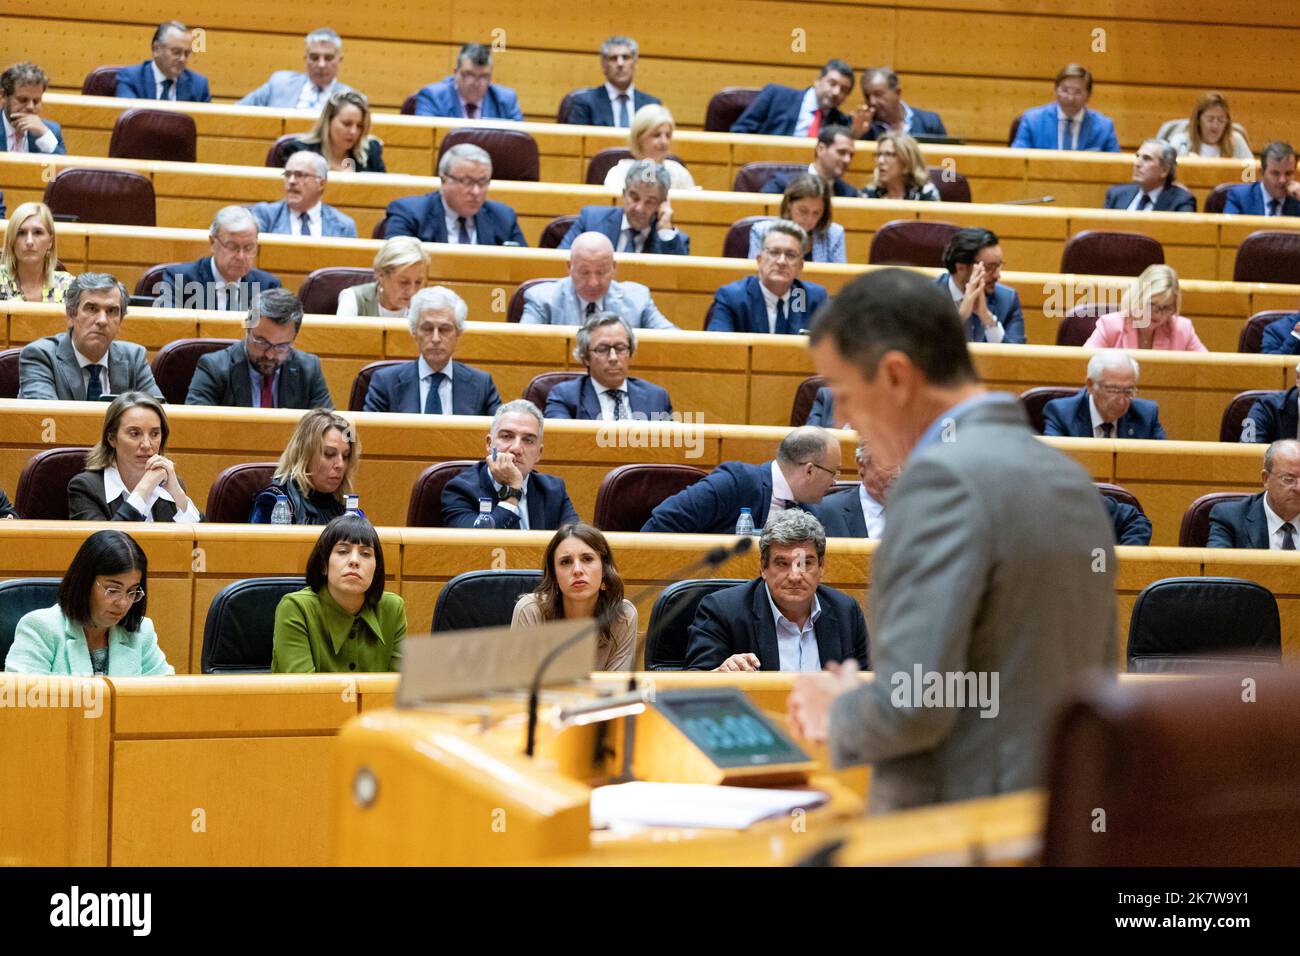 Pedro Sanchez Perez-Castejon. Presidente del governo spagnolo. Pedro Sánchez al Senato di Madrid con il gruppo socialista spagnolo dei lavoratori (PSOE) Foto Stock